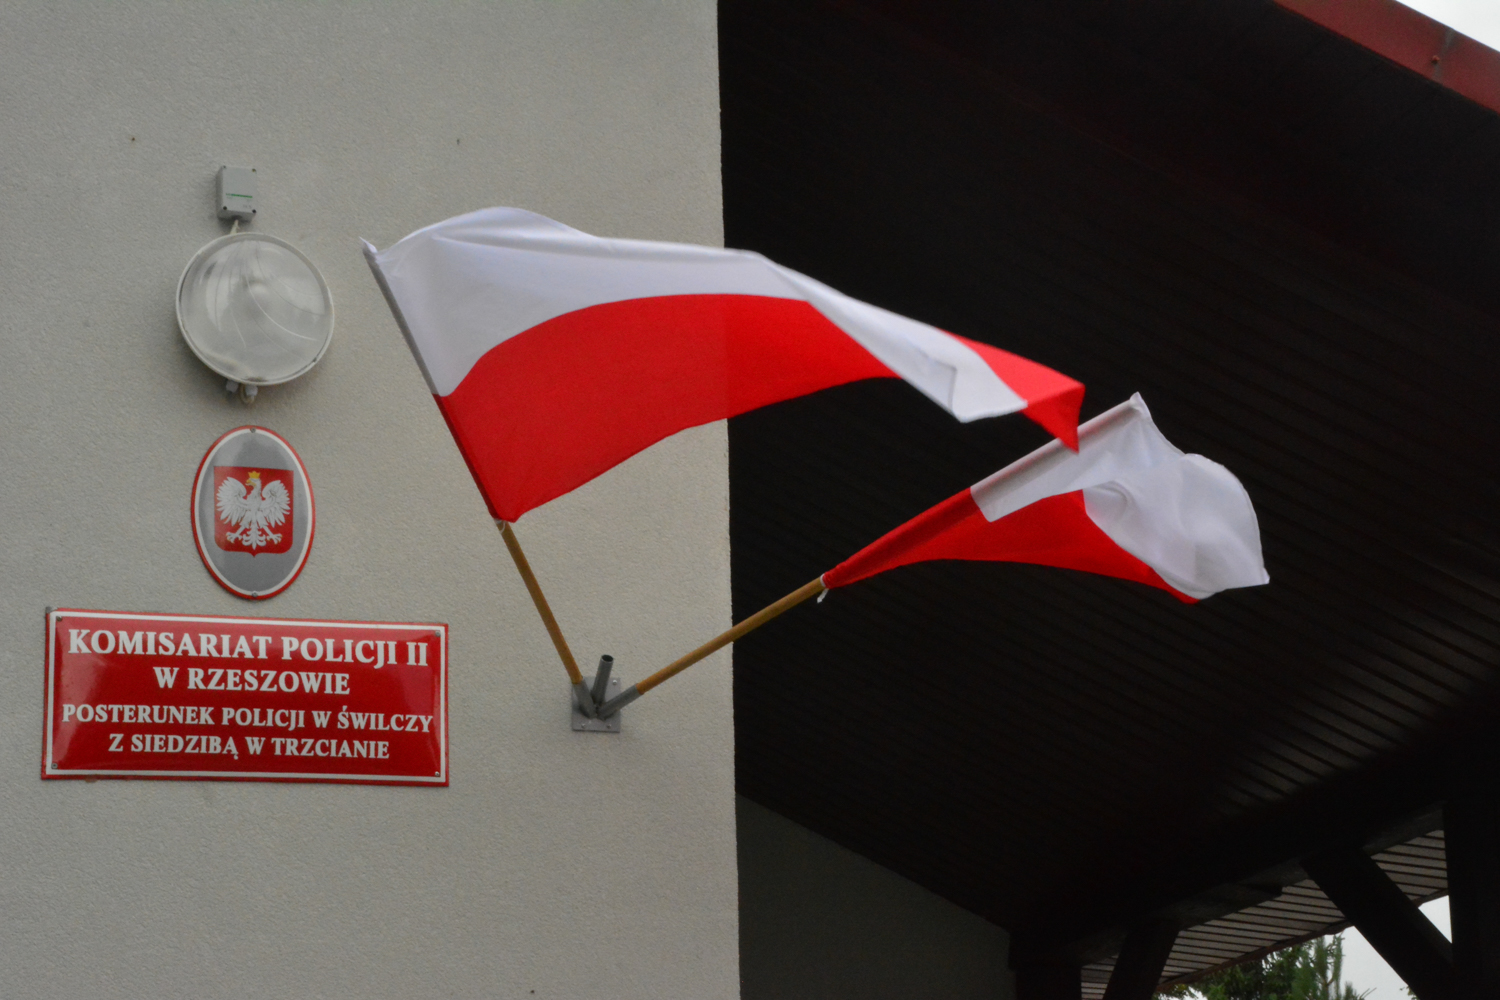 Uroczyste otwarcie nowego posterunku policji w Świlczy z siedzibą w Trzcianie